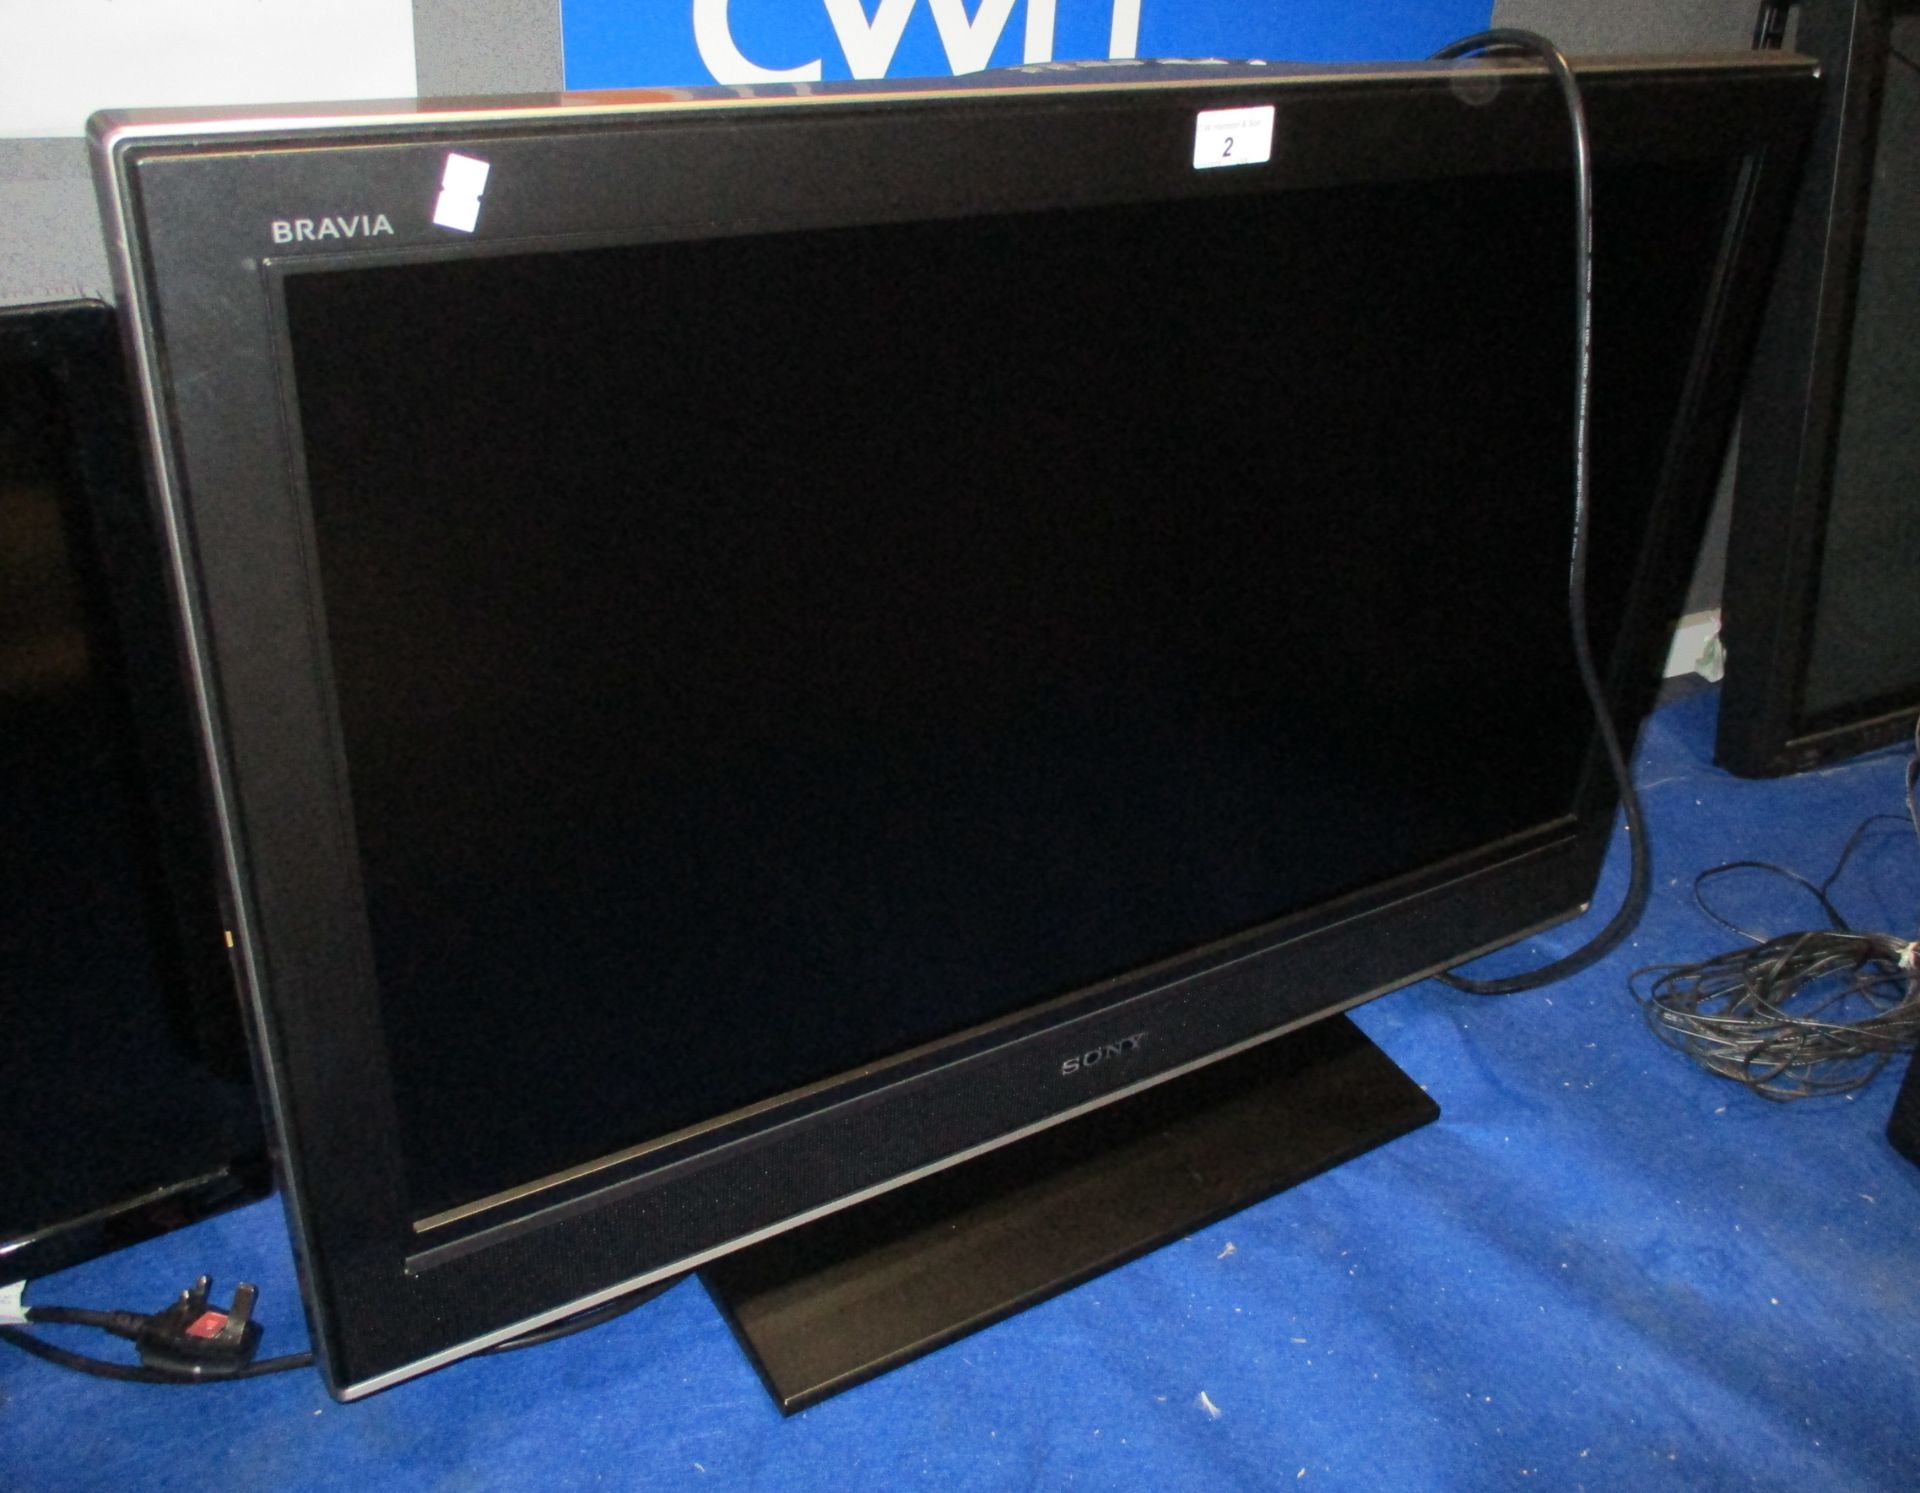 A Sony Bravia KDL-32D3000 32" LCD television (no remote control)